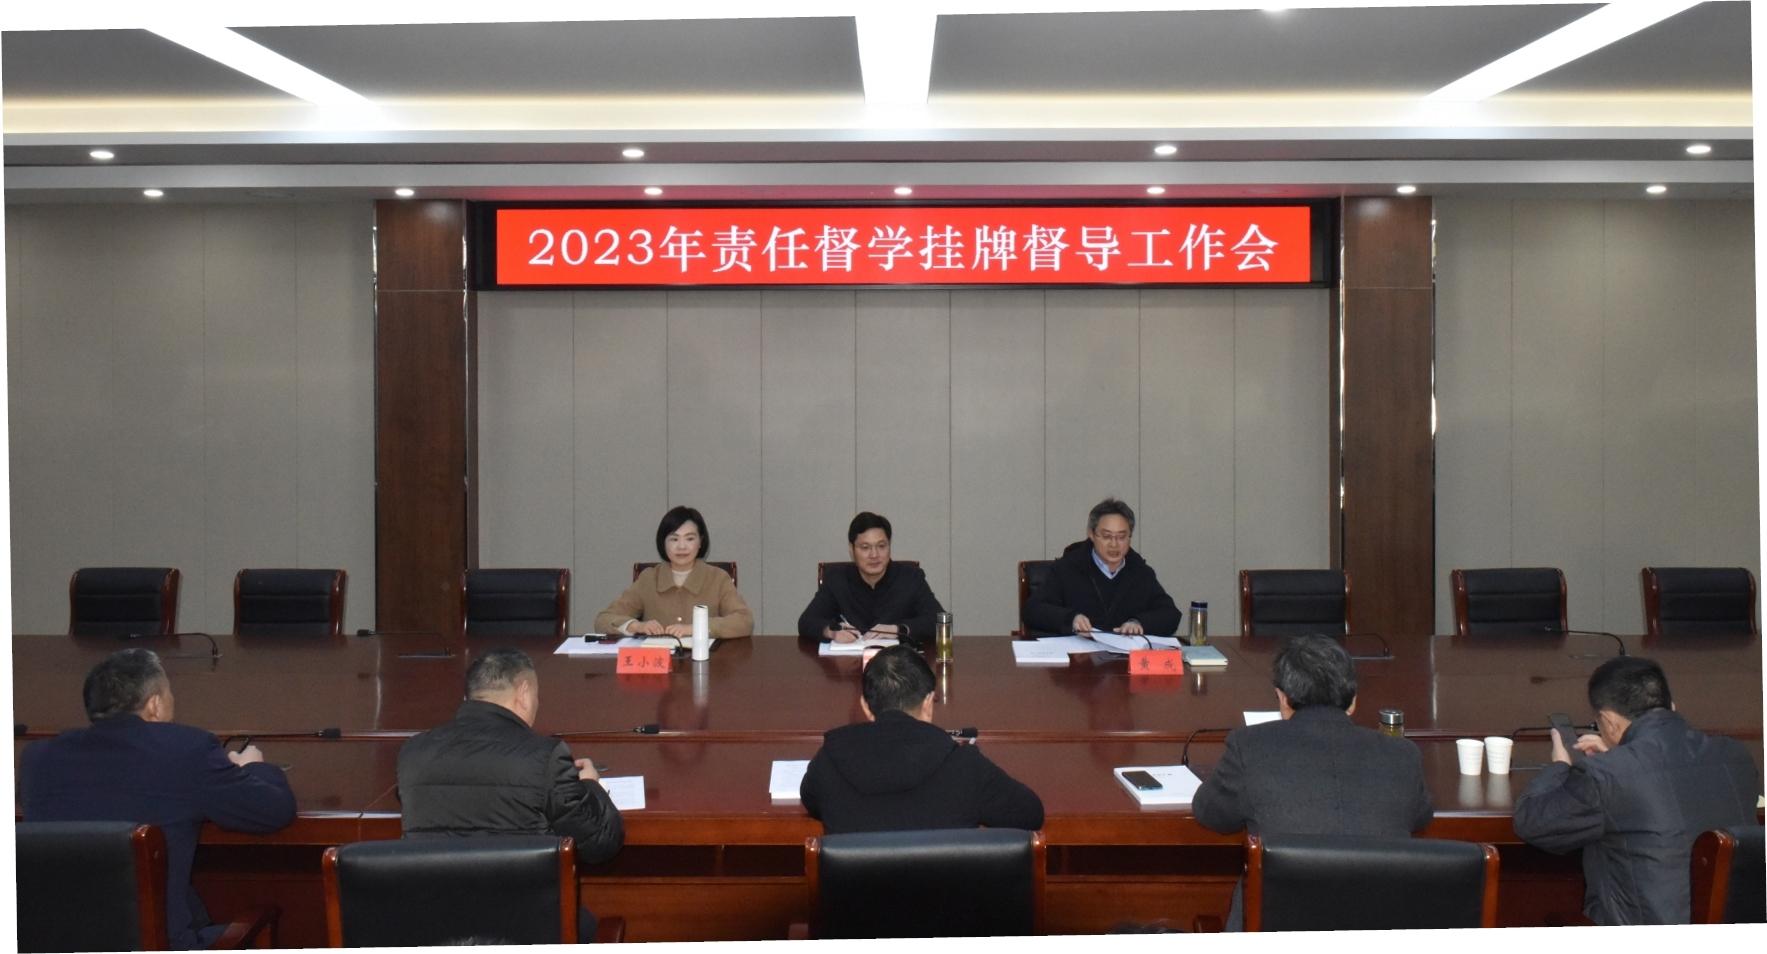 姜堰区召开2023年责任督学挂牌督导工作会